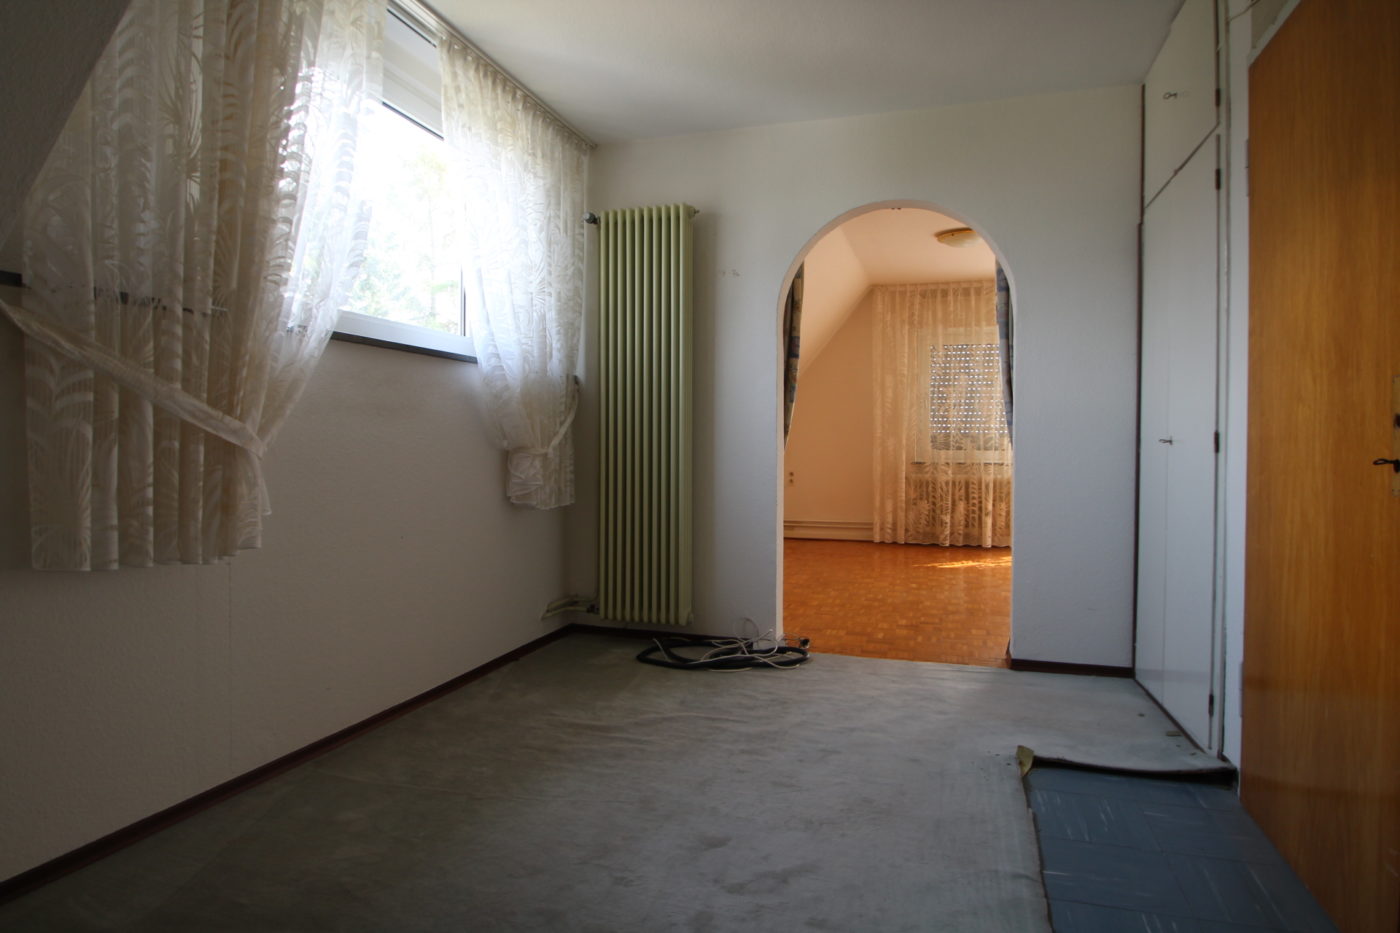 Ankleidezimmer vor dem Homestaging durch Nicole Biernath von Blickfang Homestaging in Soest